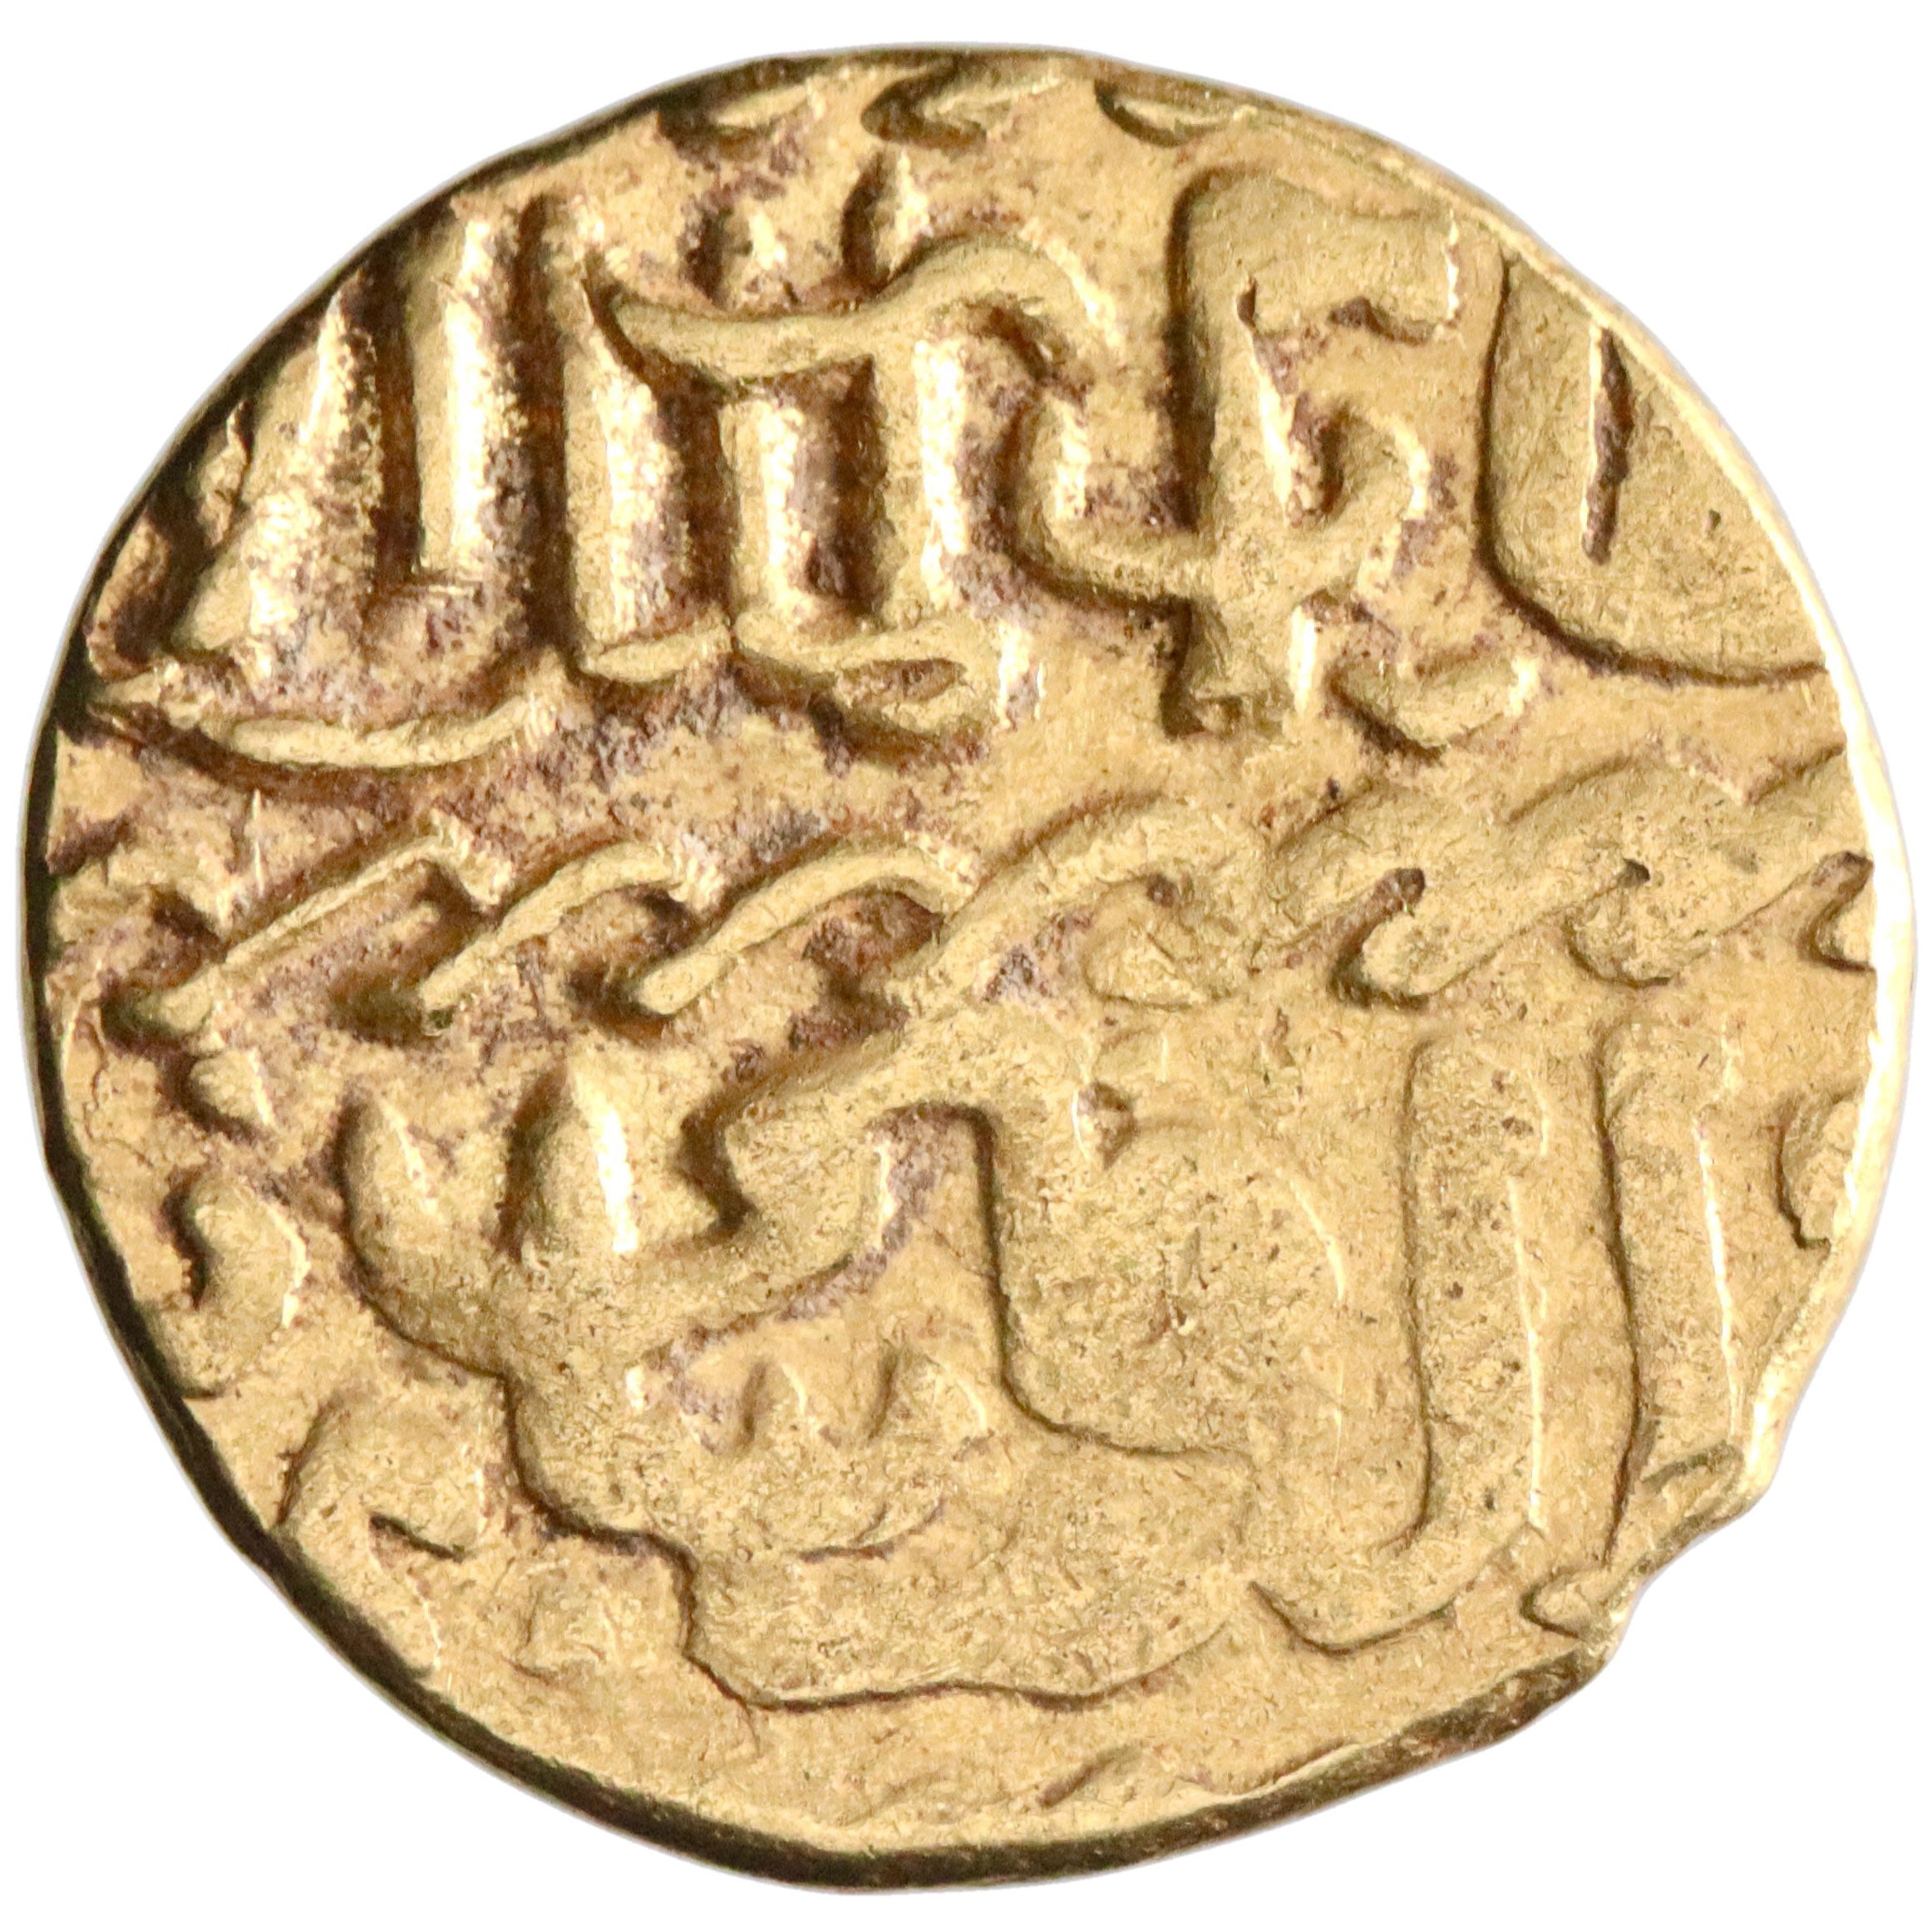 Burji Mamluk, Qa'itbay, gold ashrafi, AH 873-901